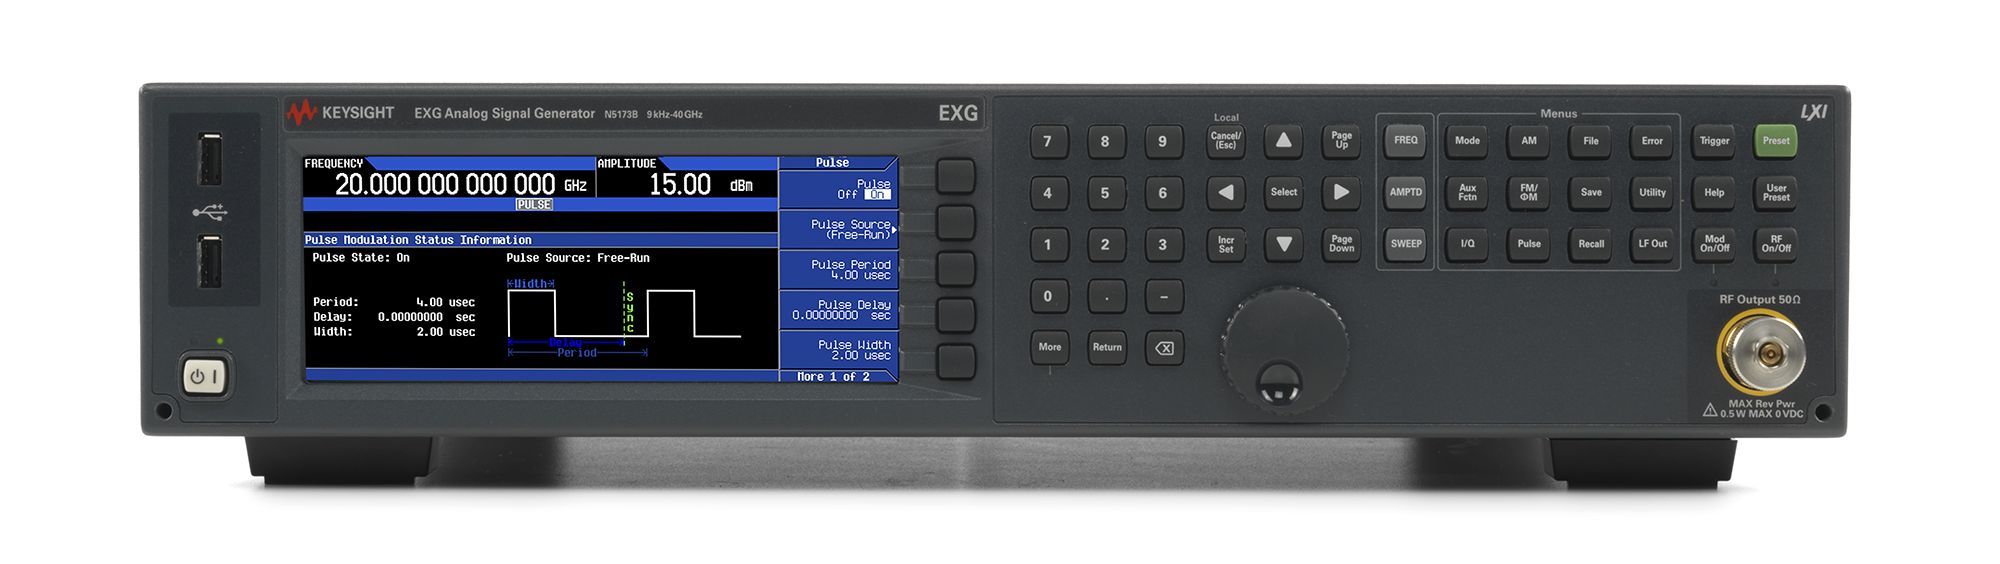 KEYSIGHT N5183A 100 kHz TO 40 GHz ANALOG SIGNAL GENERATOR 1E1 1EA 540 UNW